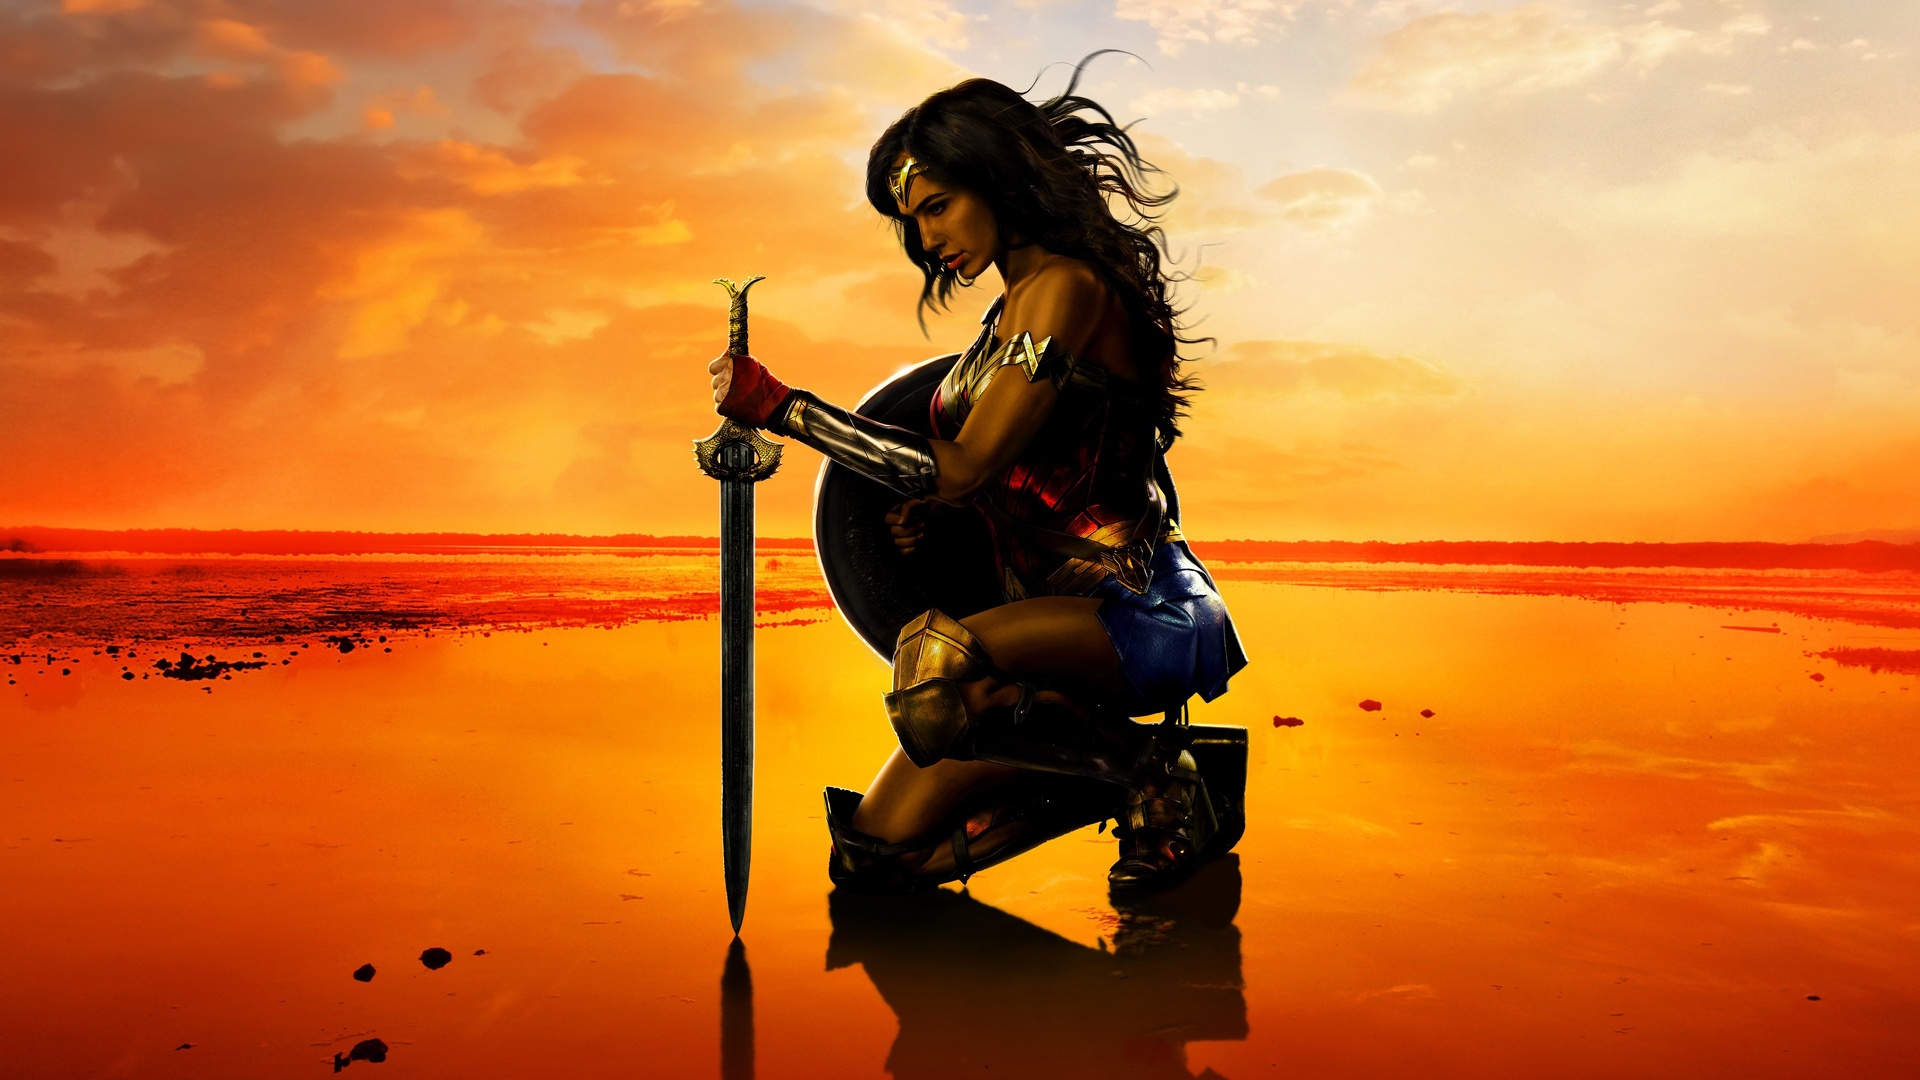 Wonder woman - fond d'écran 4K.jpg